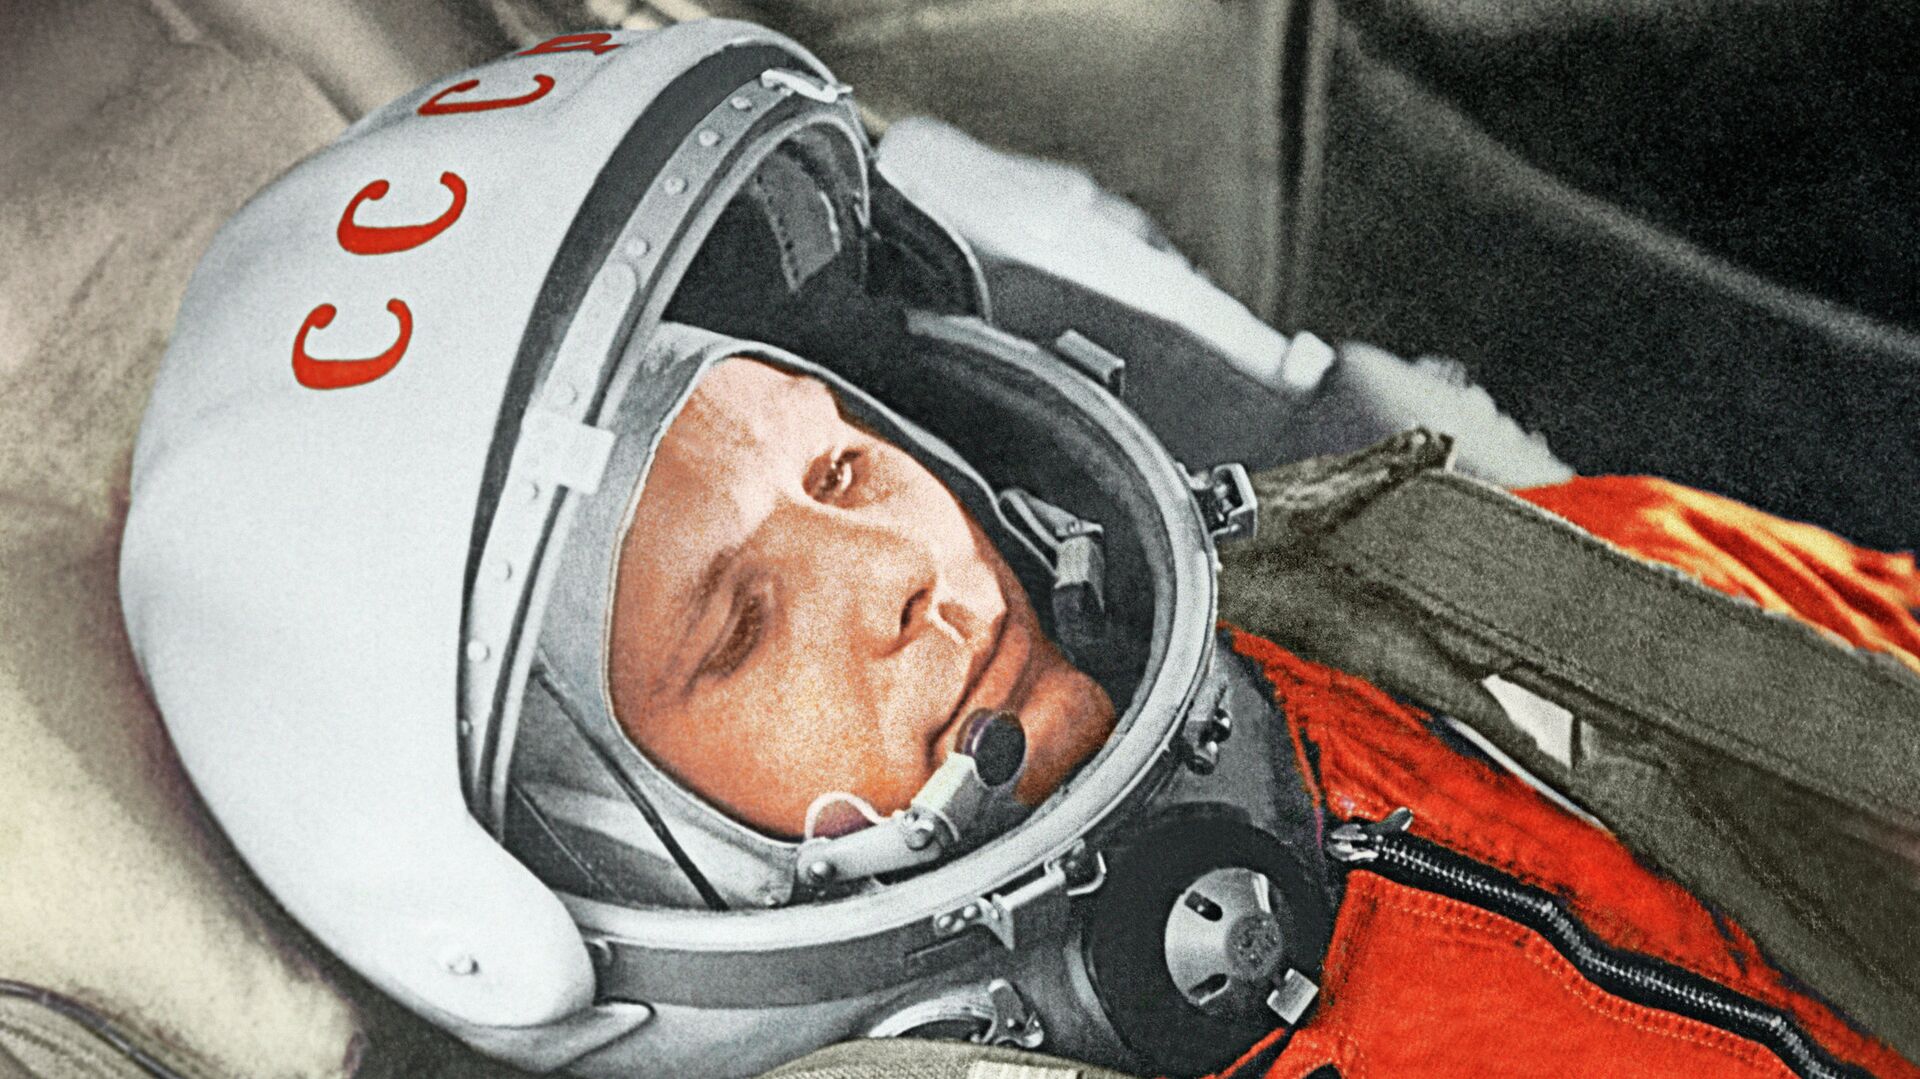 Yuri Gagarin, Gagarin, justo antes de ser el primer humano en alcanzar el cosmos, 12 de abril de 1961 - Sputnik Mundo, 1920, 12.04.2021